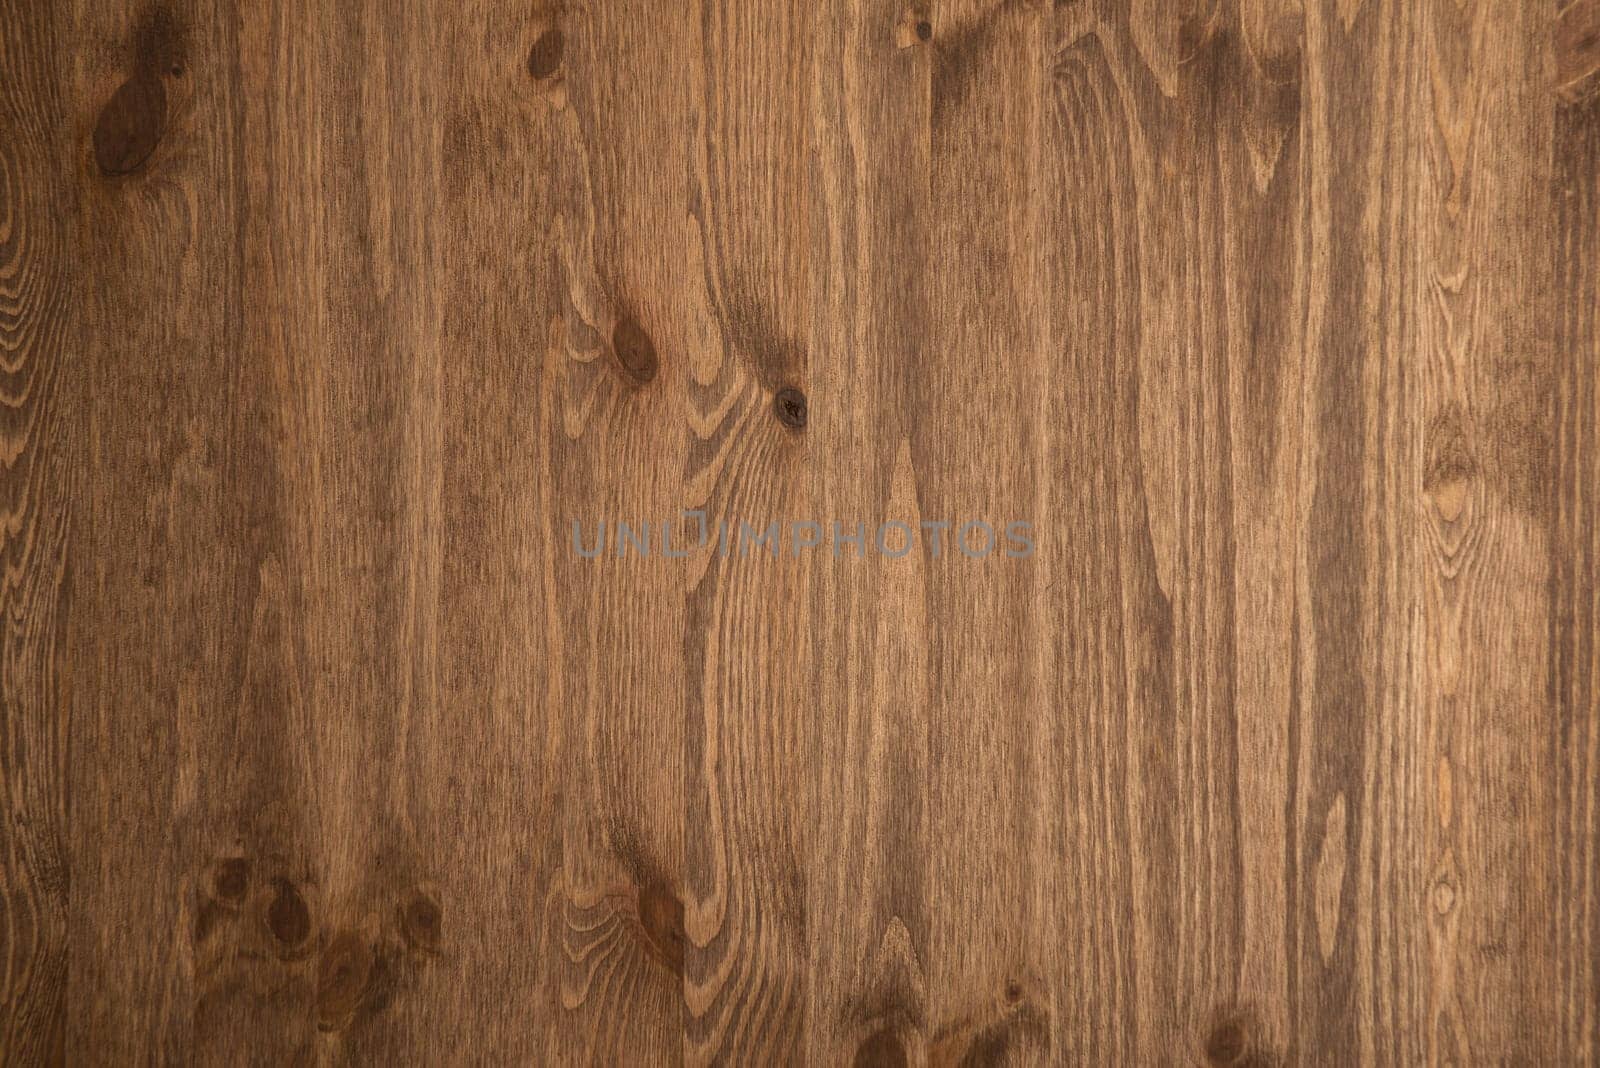 Dark Brown wood plank wall texture background by zartarn